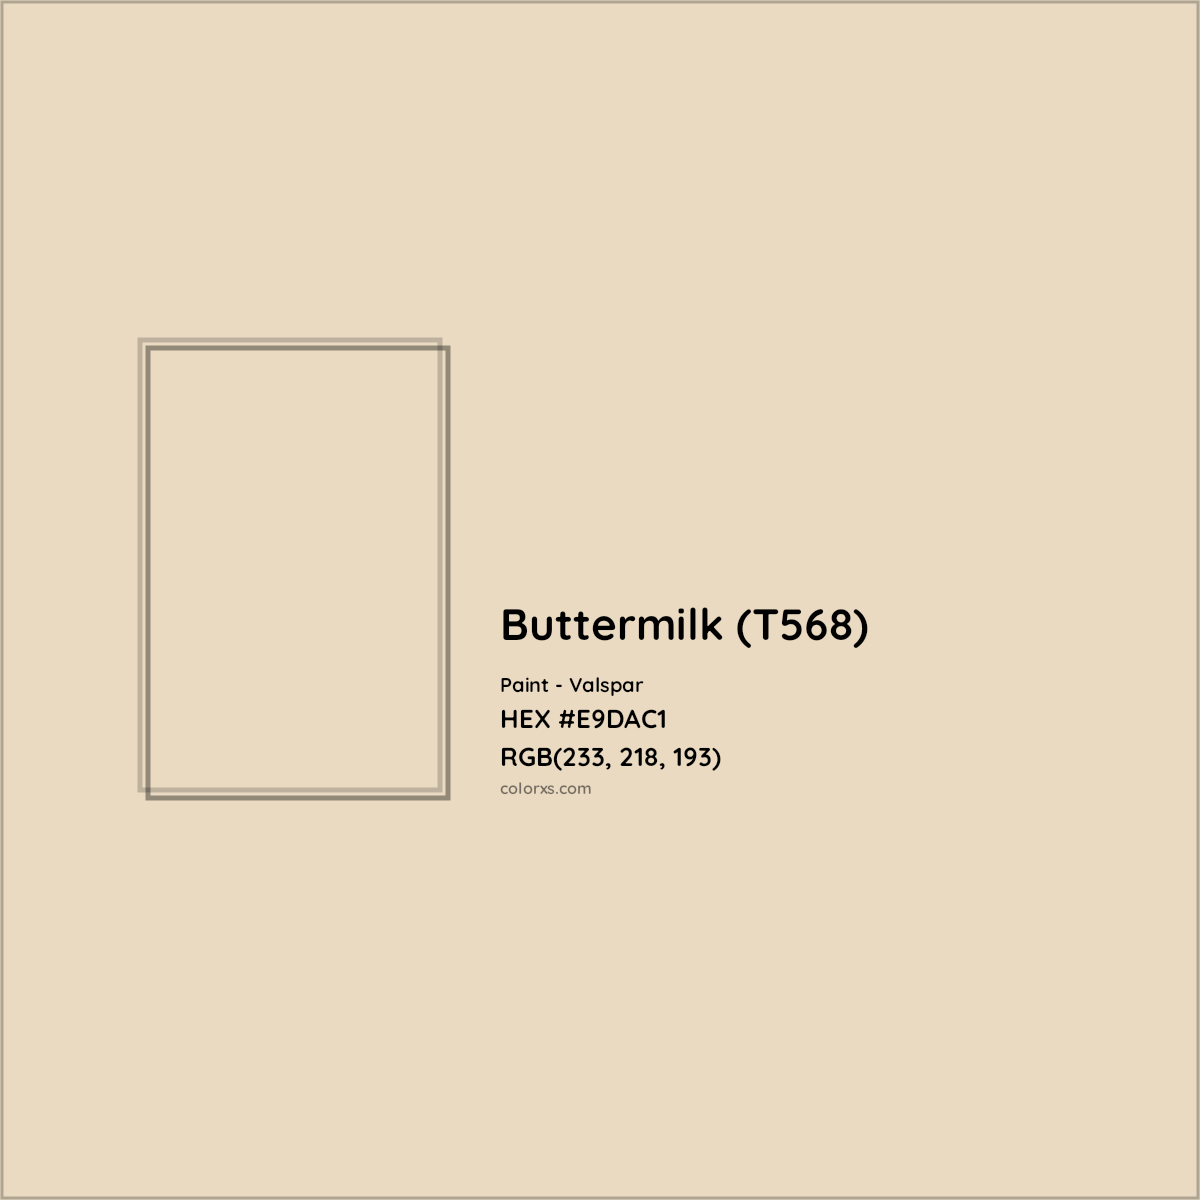 HEX #E9DAC1 Buttermilk (T568) Paint Valspar - Color Code